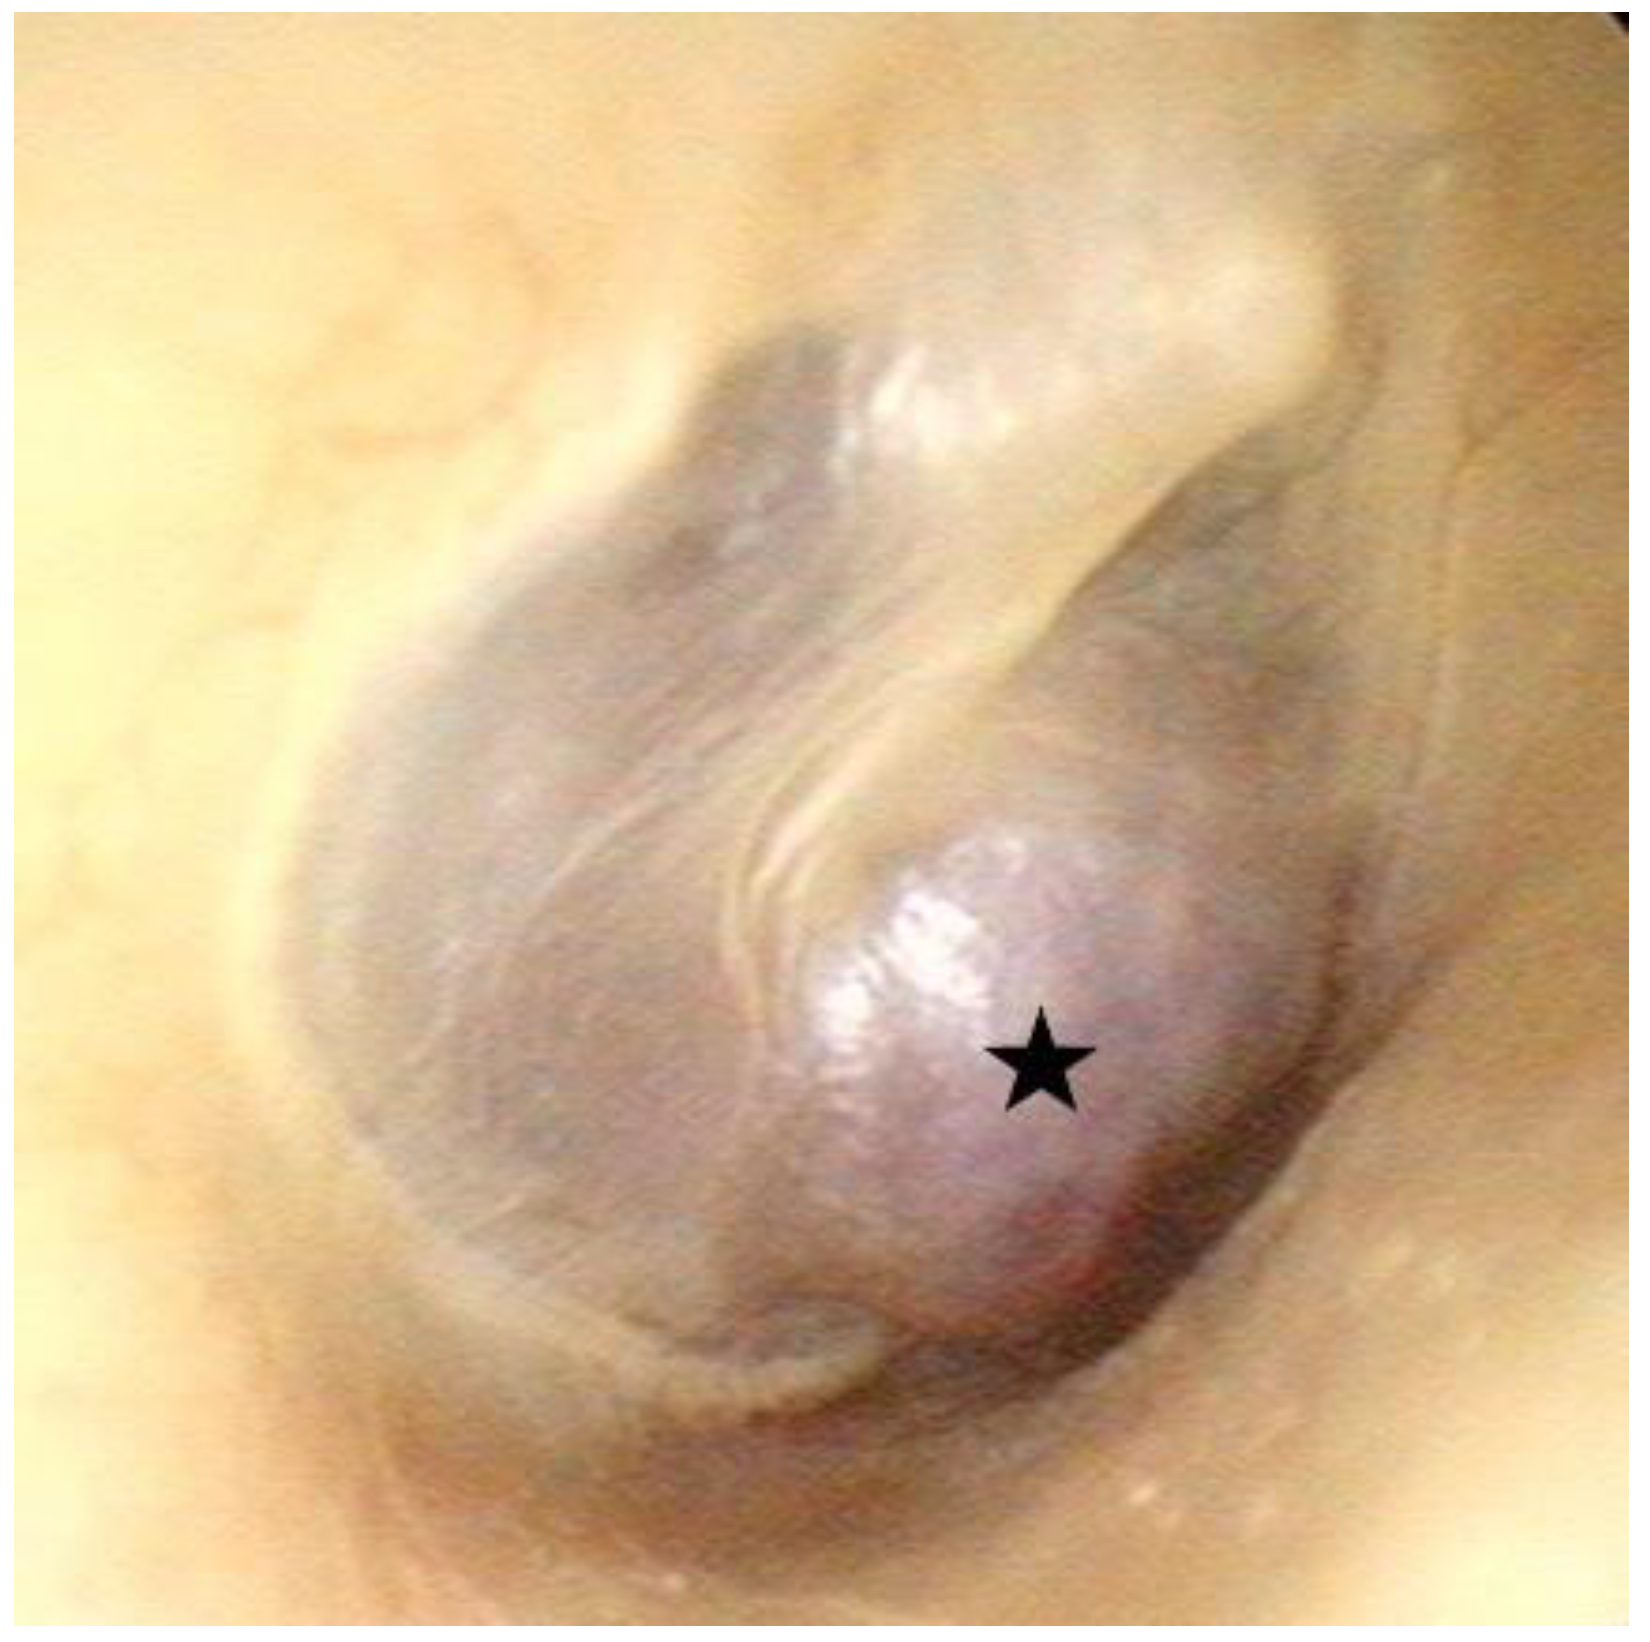 internal carotid artery in ear